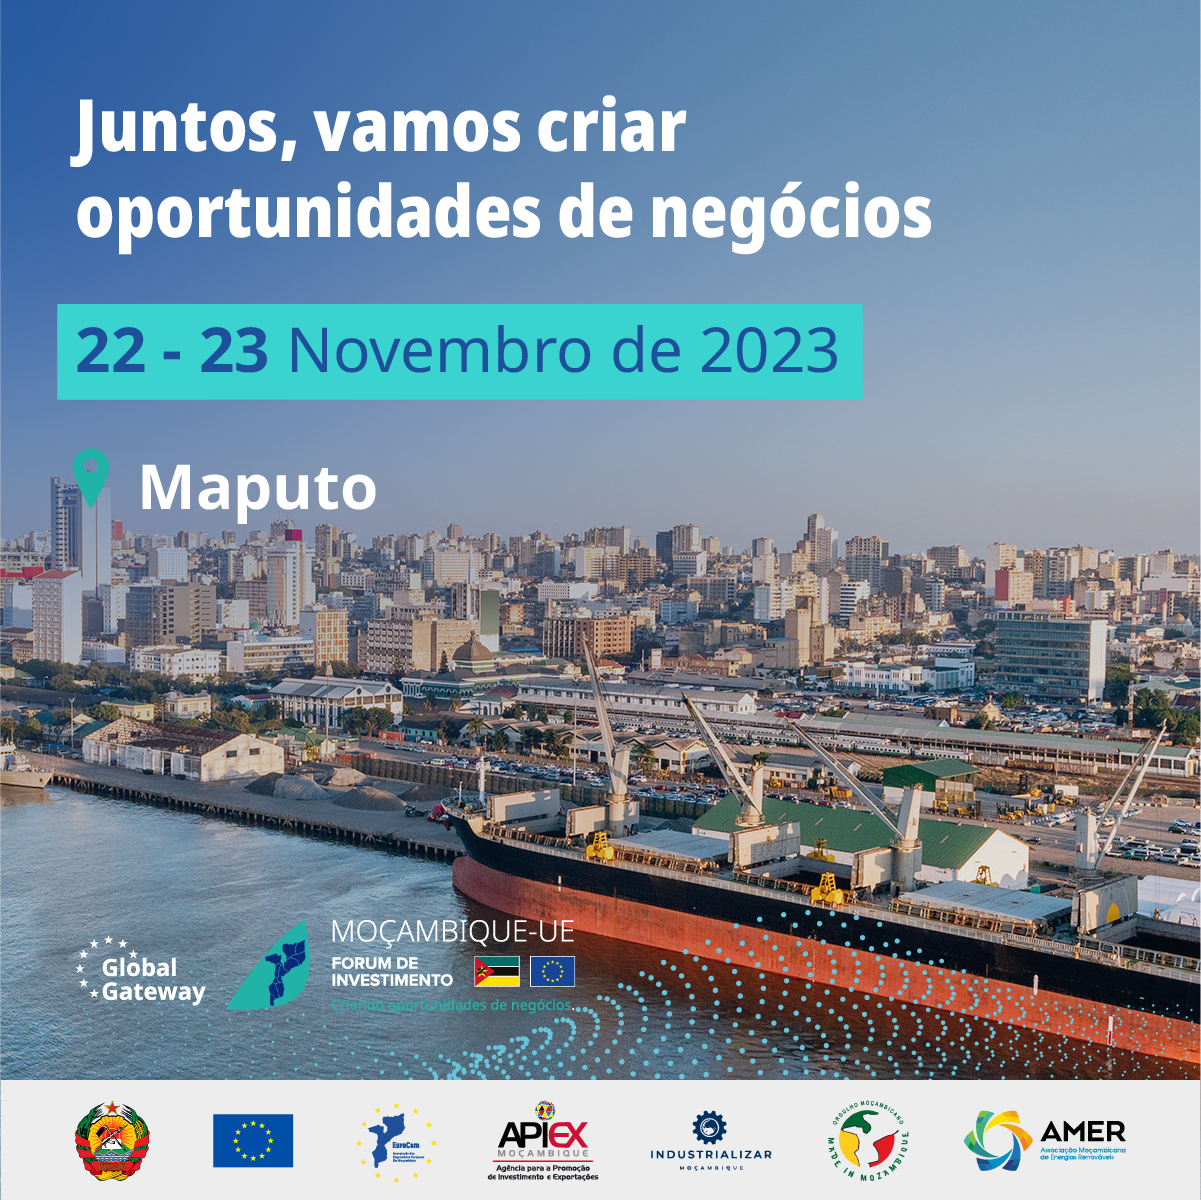 ITA Maputo on X: Participe do 1º “Fórum de Investimento Global Gateway  Moçambique-EU”. De 22 a 23 de novembro de 2023, em Maputo.Descubra mais e  registe-se agora!  forum/registration   #MozEUGGIF2023 #EUinMoz #